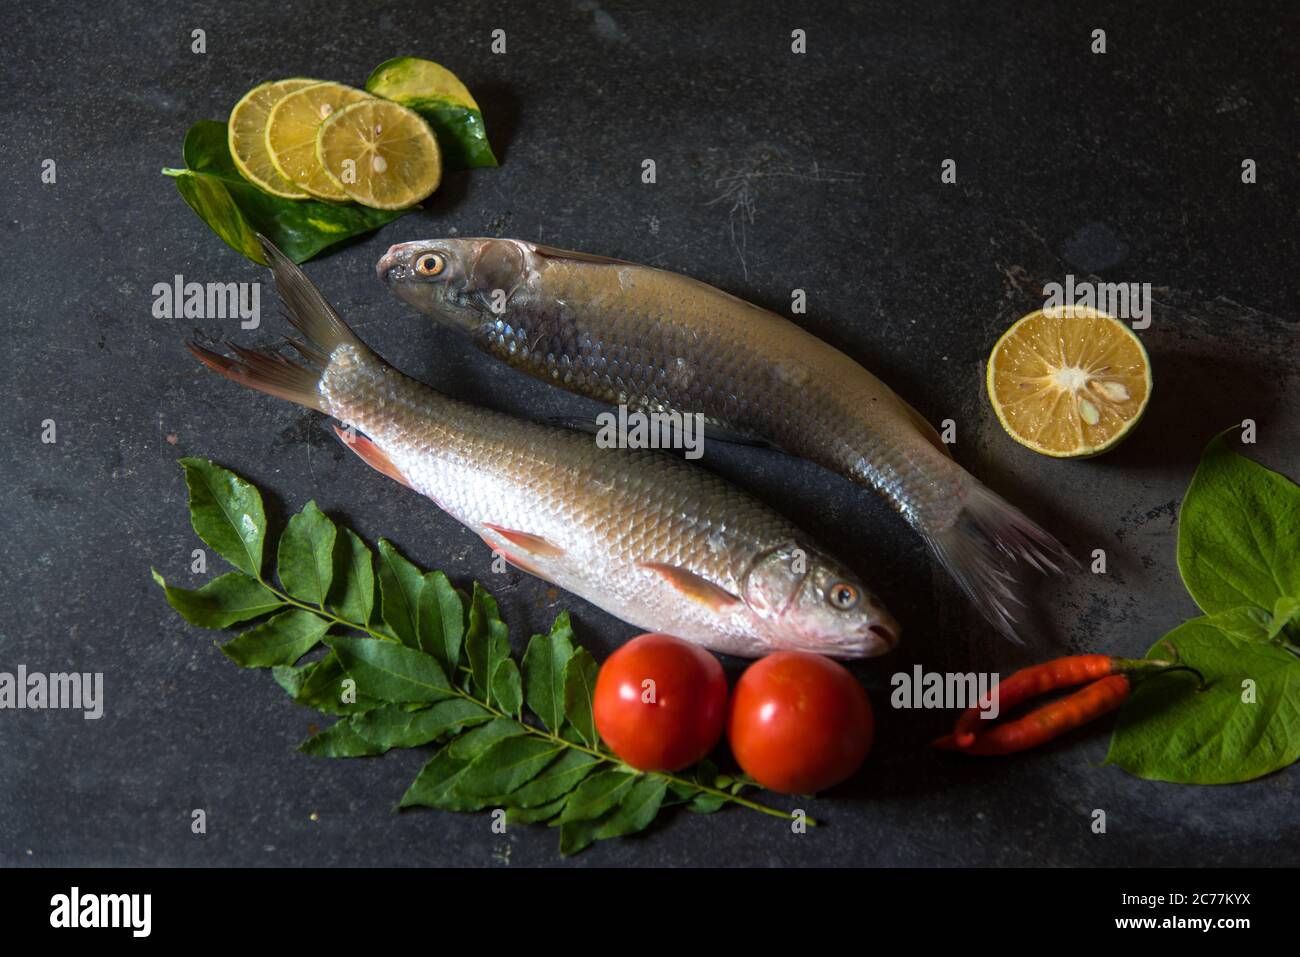 Poisson non cuit sur fond noir avec utilisation de l'accent sélectif sur une partie particulière du poisson et le reste du poisson et d'autres ingrédients flous. Banque D'Images